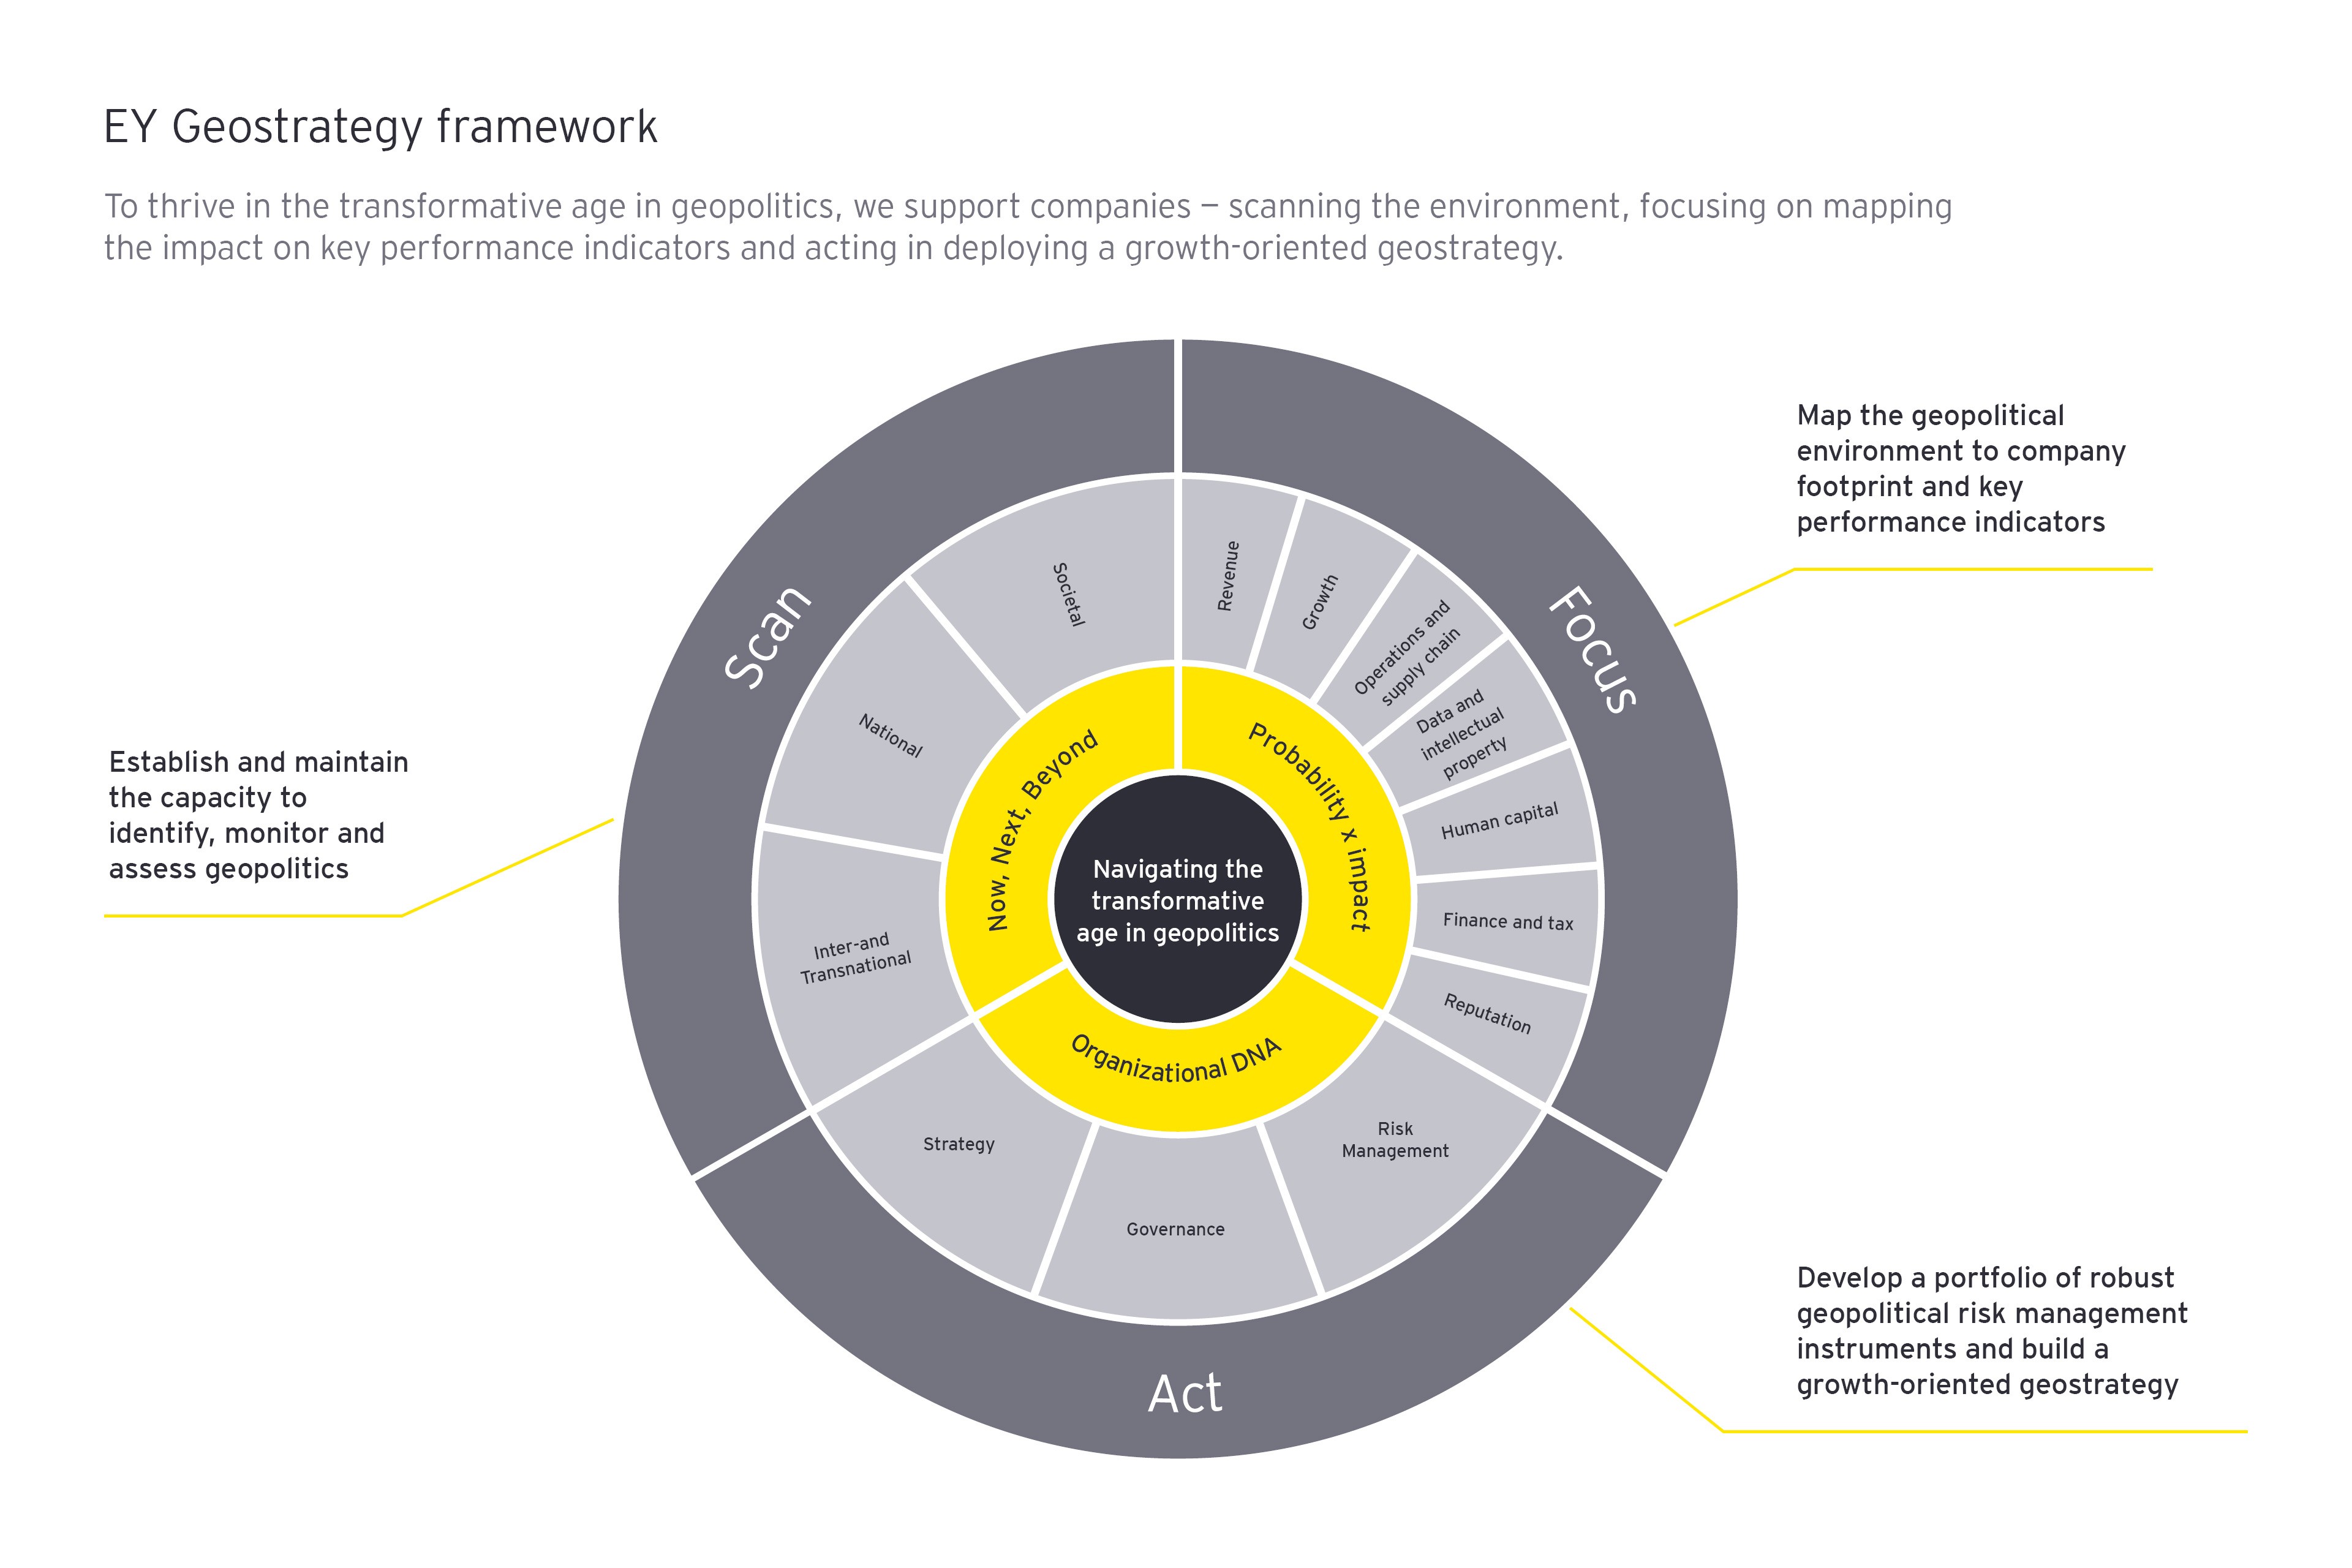 EY geostrategy framework diagram